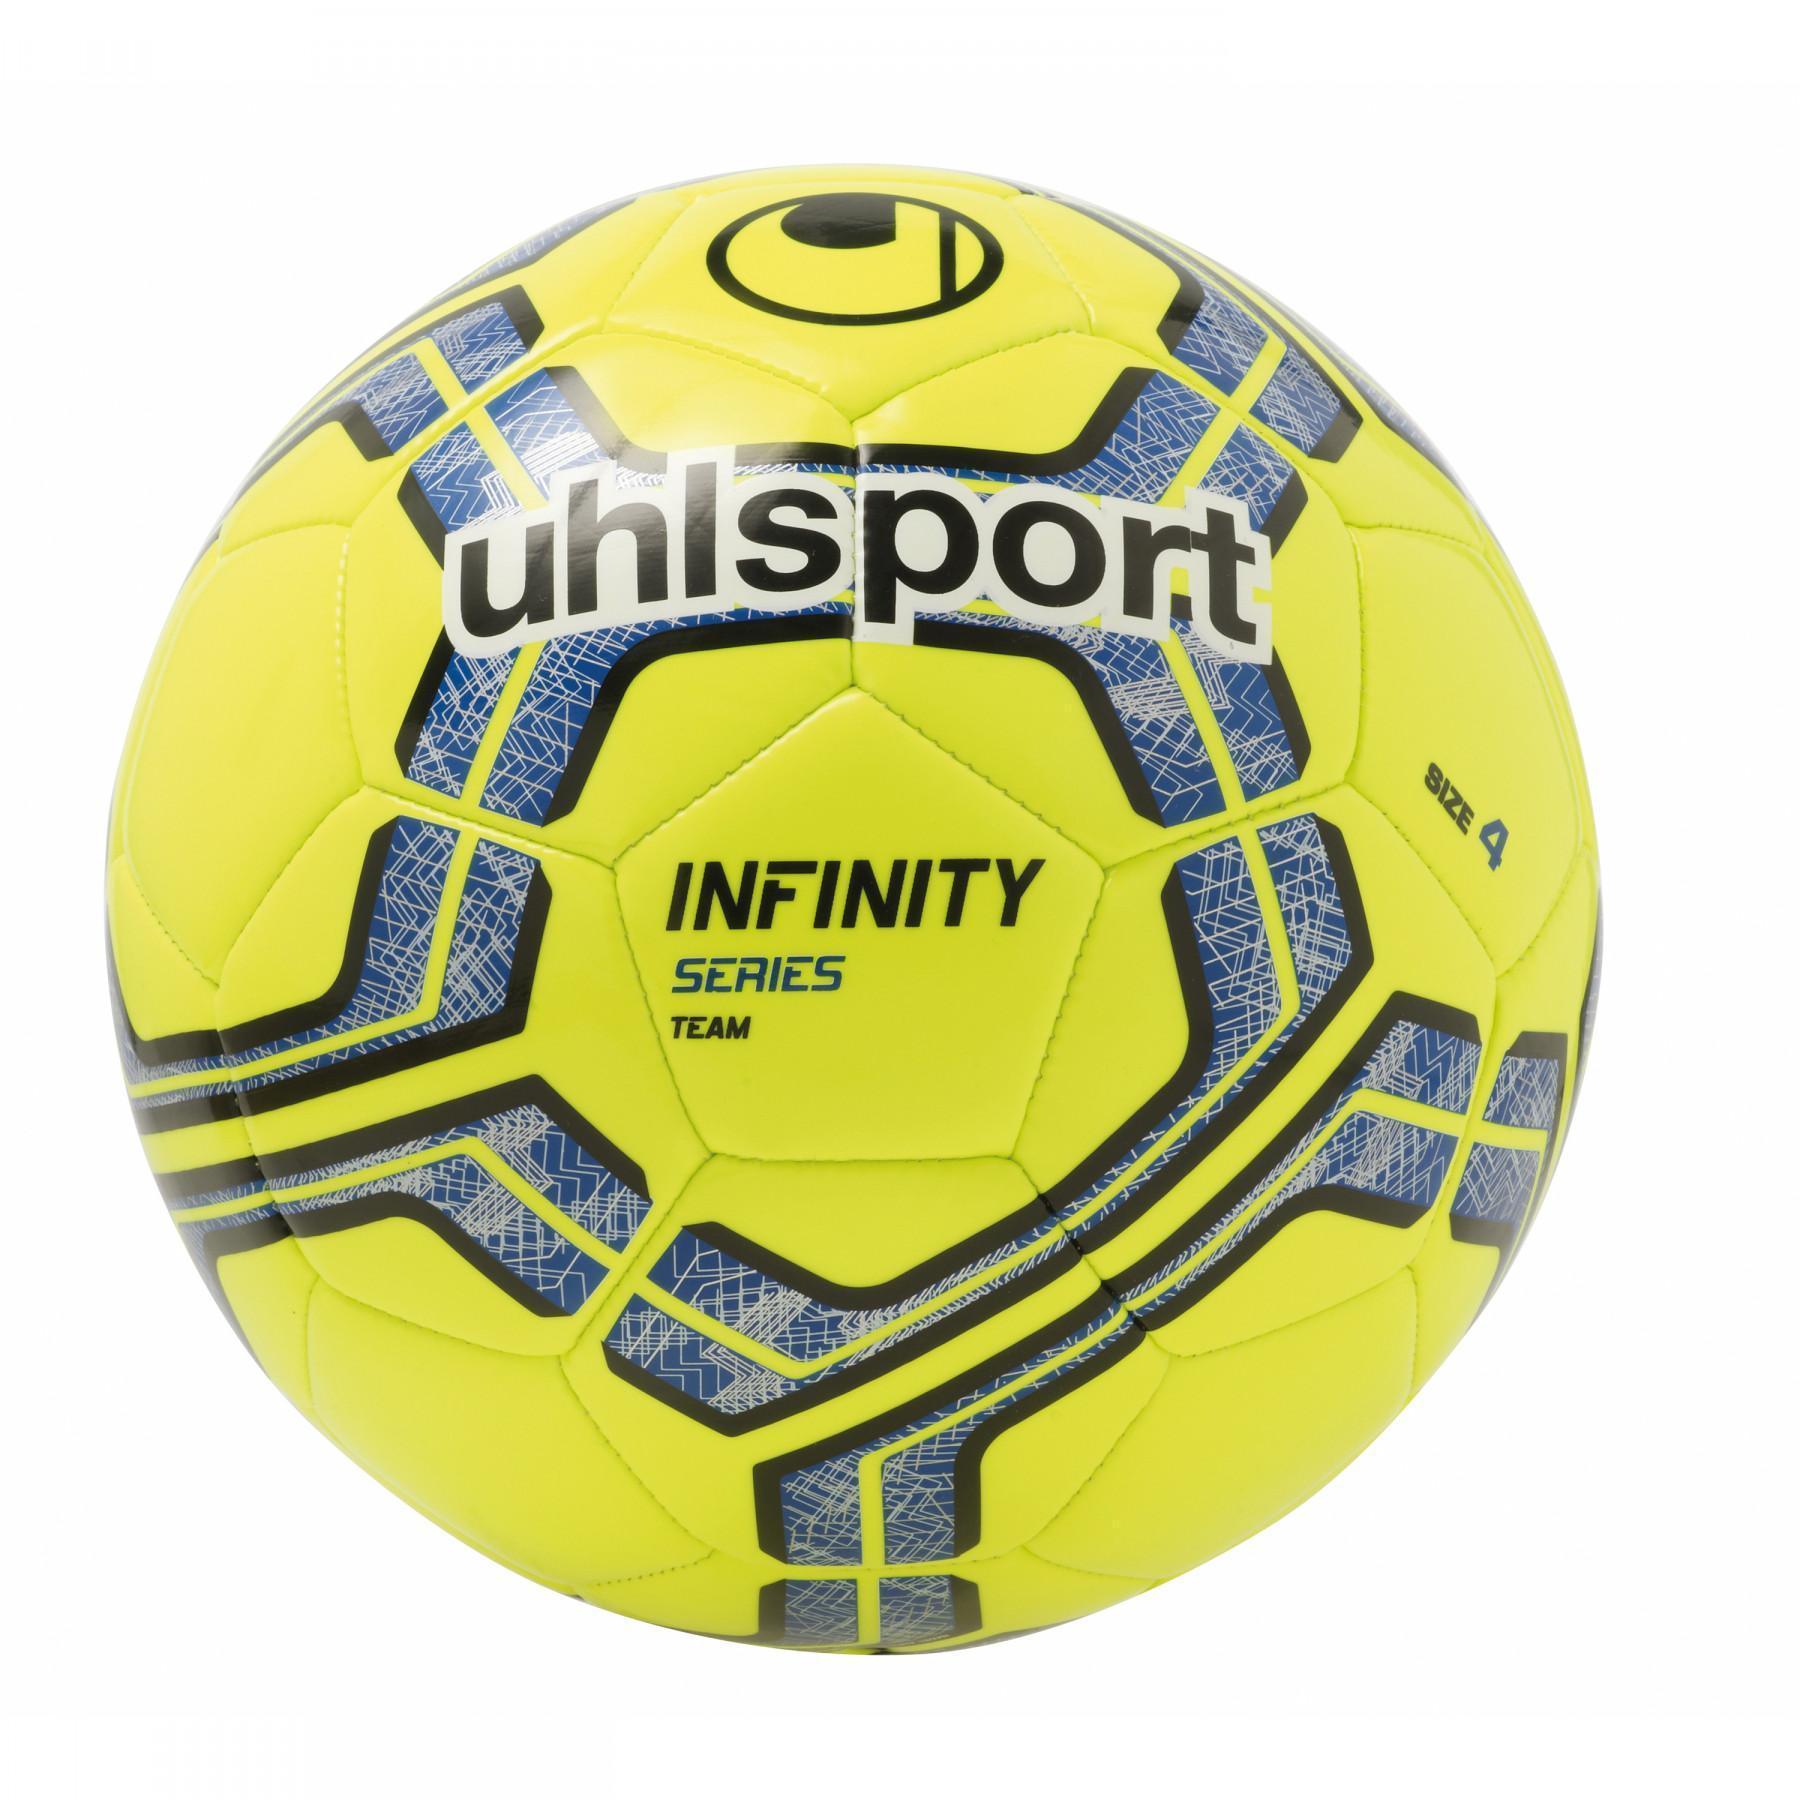 Balão Uhlsport Infinity Team